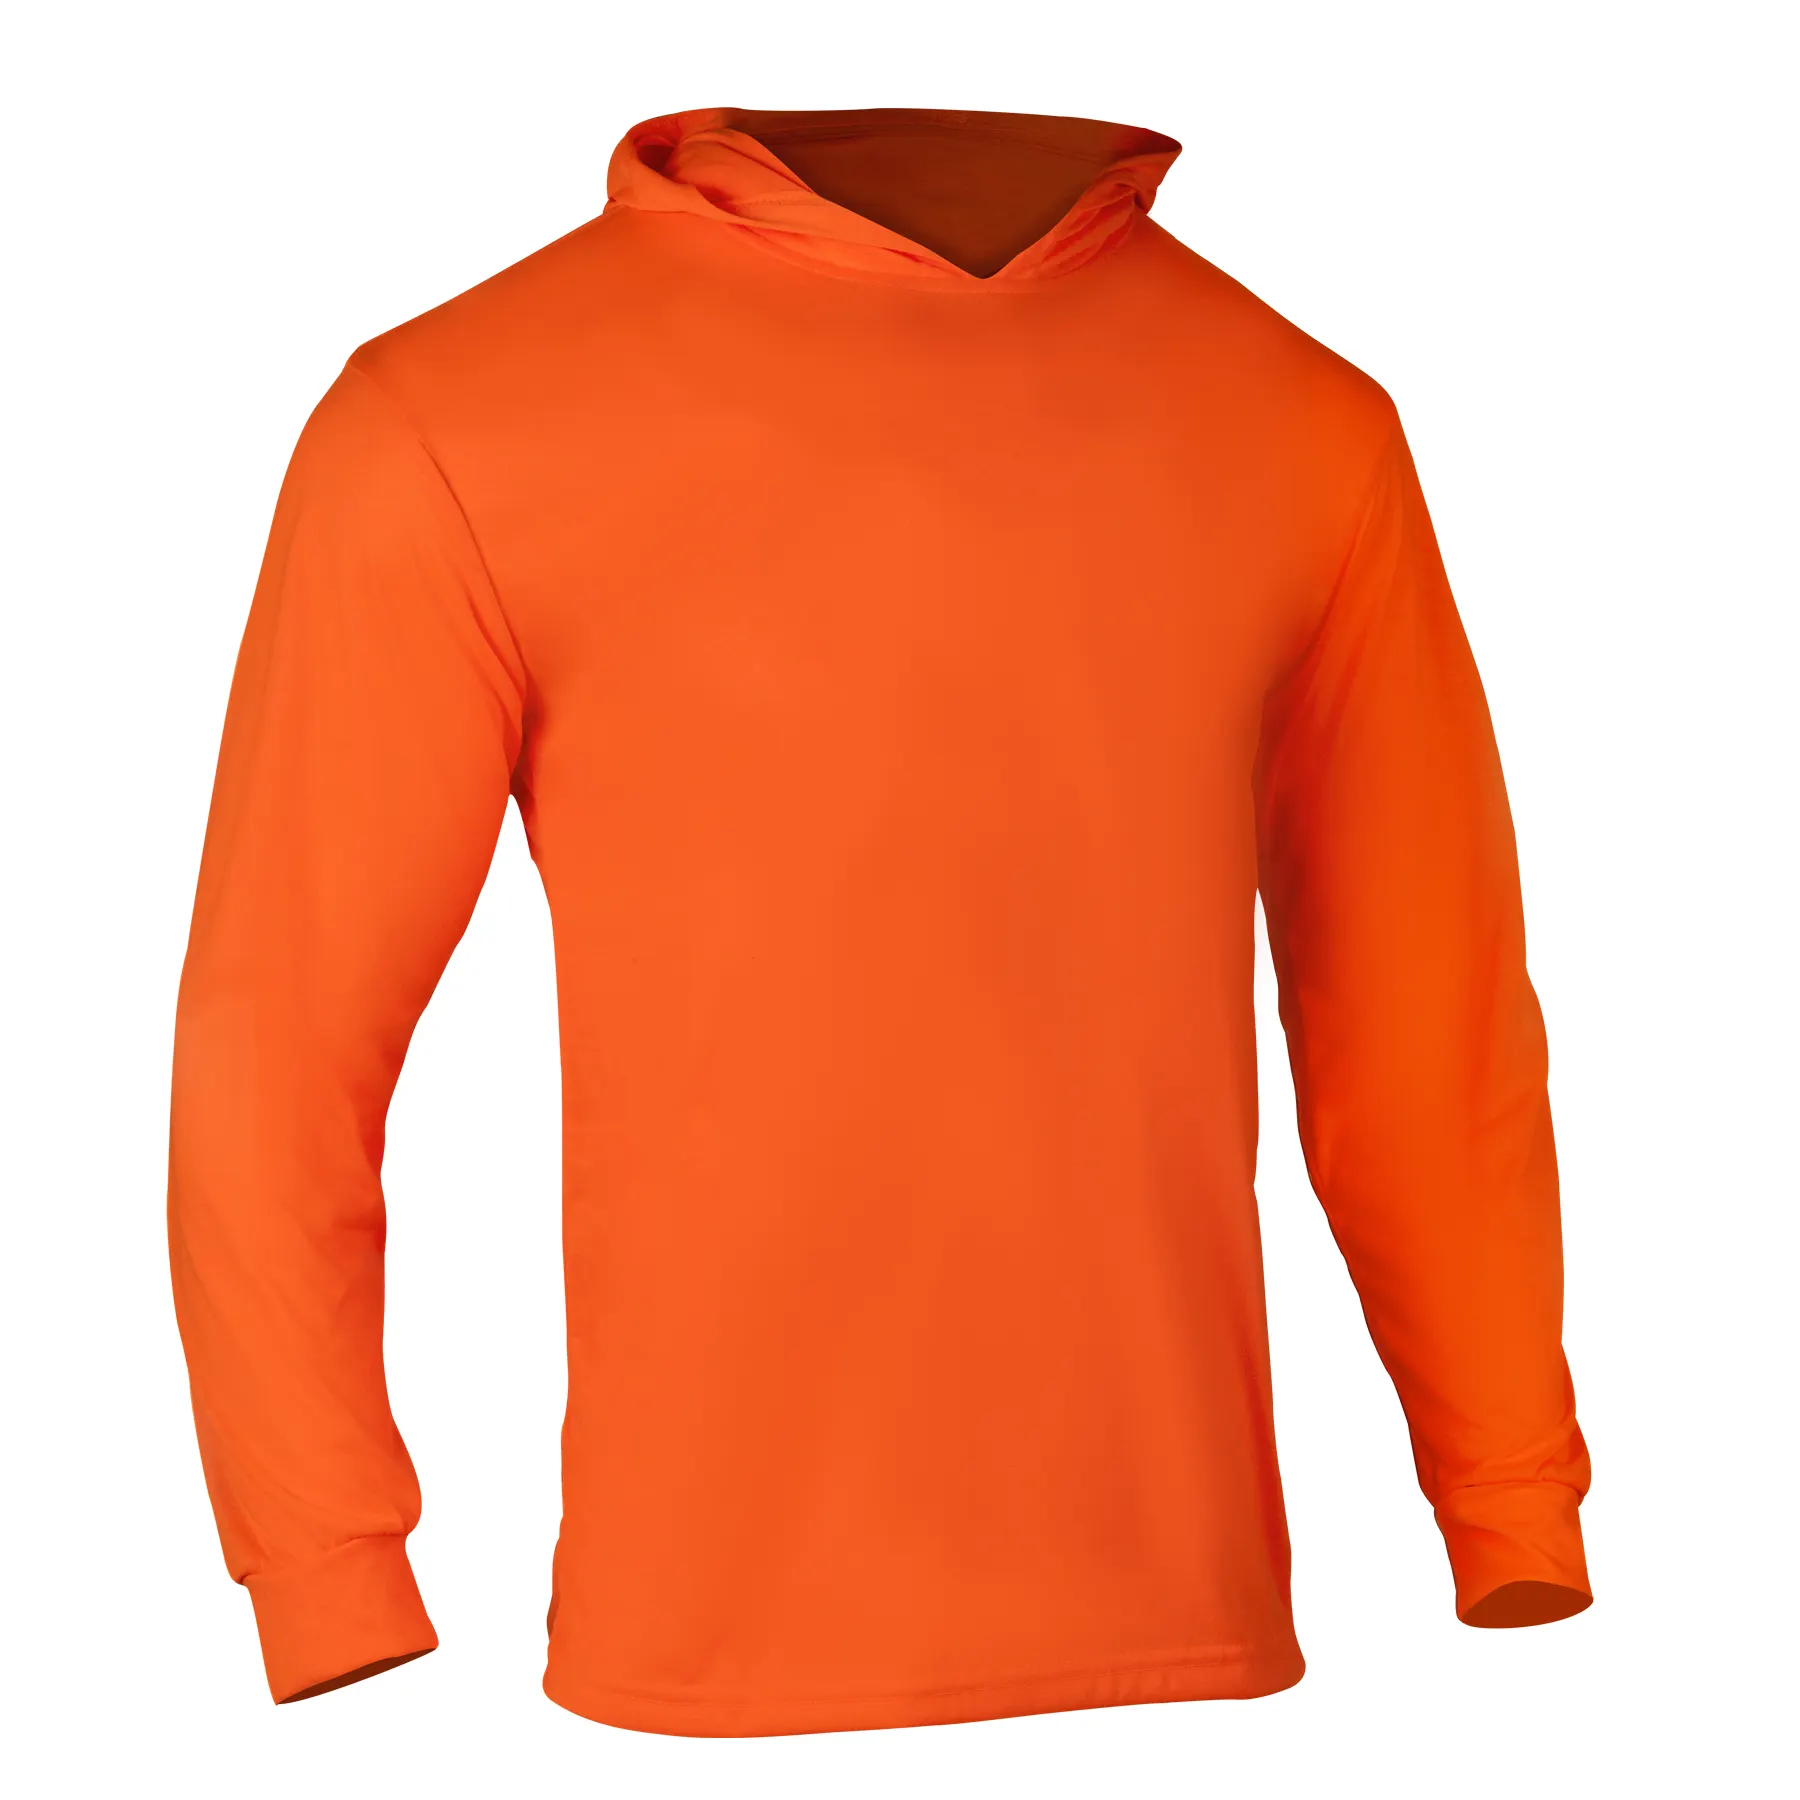 Ansi turuncu floresan Sweatshirt erkekler emniyet gömleği inşaat uzun kollu gömlek